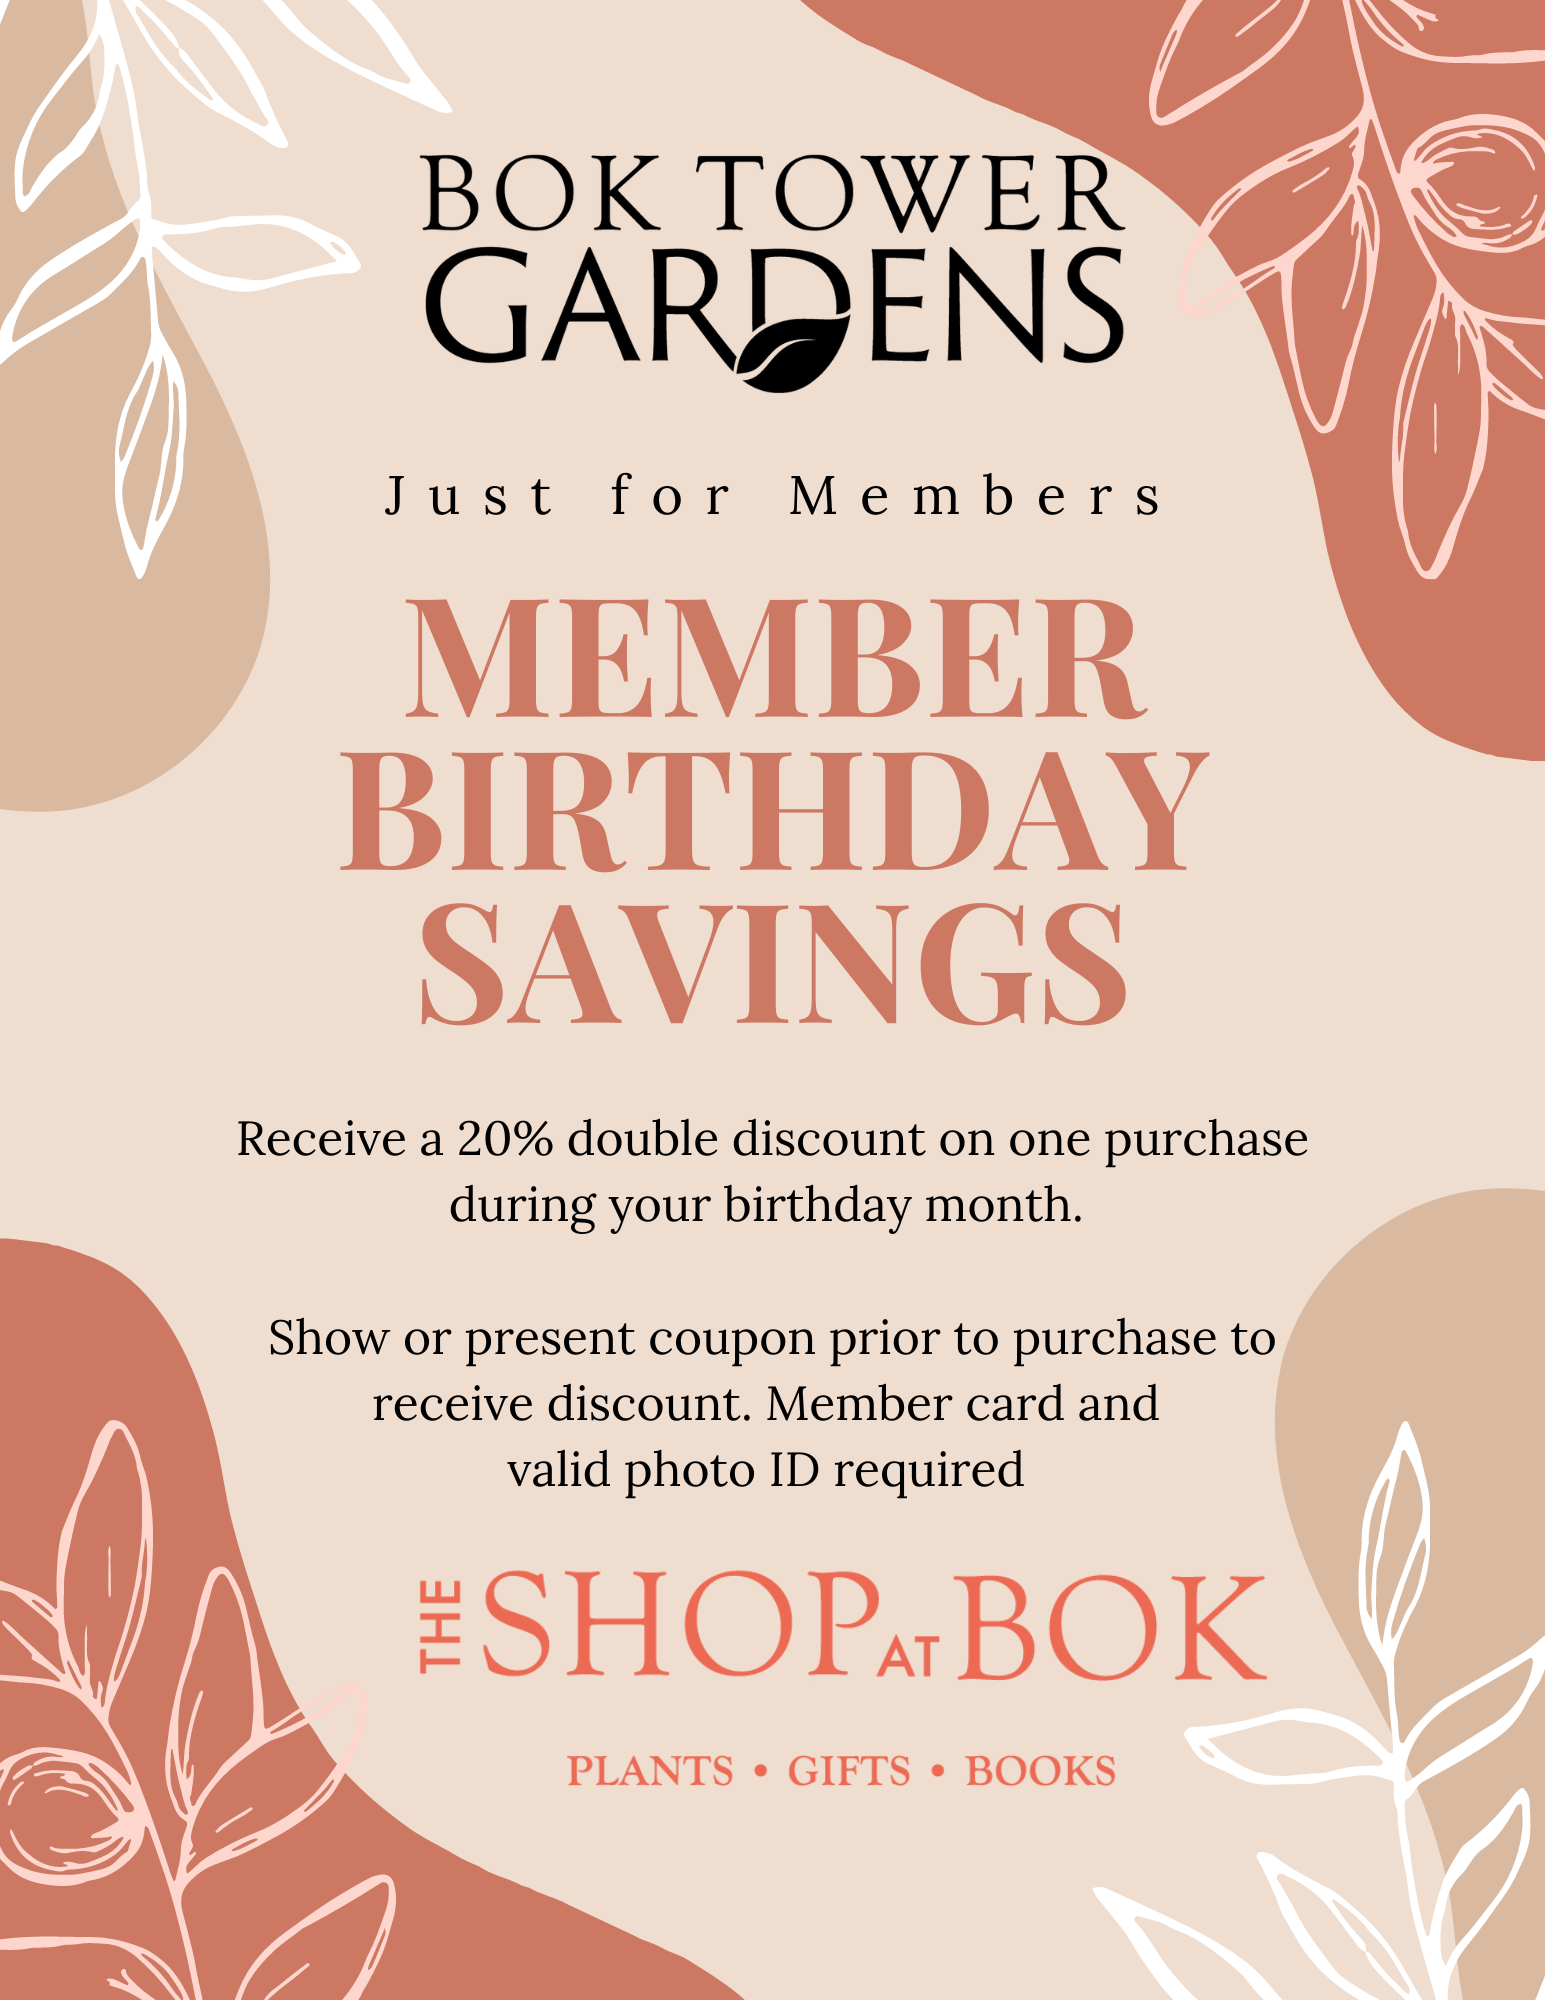 Member Birthday Savings